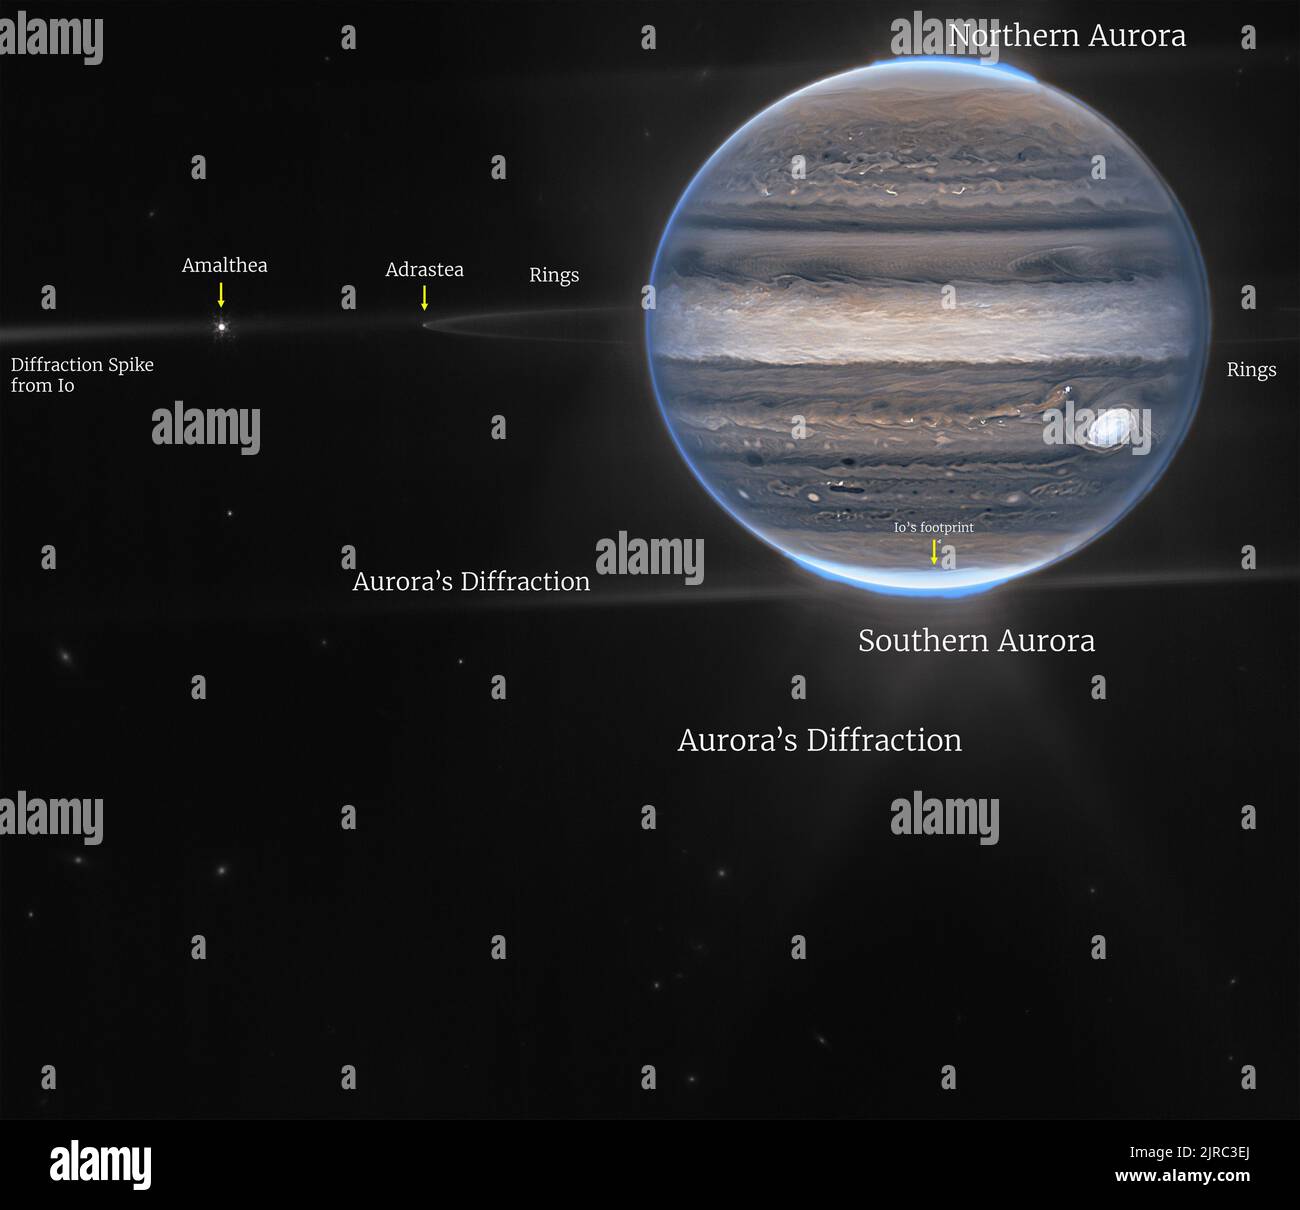 Das James Webb Space Telescope der NASA hat neue Bilder von Jupiter aufgenommen und zeigt die riesigen Stürme, starken Winde, Auroren und extremen Temperatur- und Druckbedingungen des Planeten. Die beiden Bilder stammen von der Nahinfrarot-Kamera (NIRCam) des Observatoriums, die über drei spezielle Infrarotfilter verfügt, die Details des Planeten zeigen. Da Infrarotlicht für das menschliche Auge unsichtbar ist, wurde das Licht auf das sichtbare Spektrum abgebildet. Im Allgemeinen erscheinen die längsten Wellenlängen röter, und die kürzesten Wellenlängen werden blau dargestellt. Kredit: UPI/Alamy Live Nachrichten Stockfoto